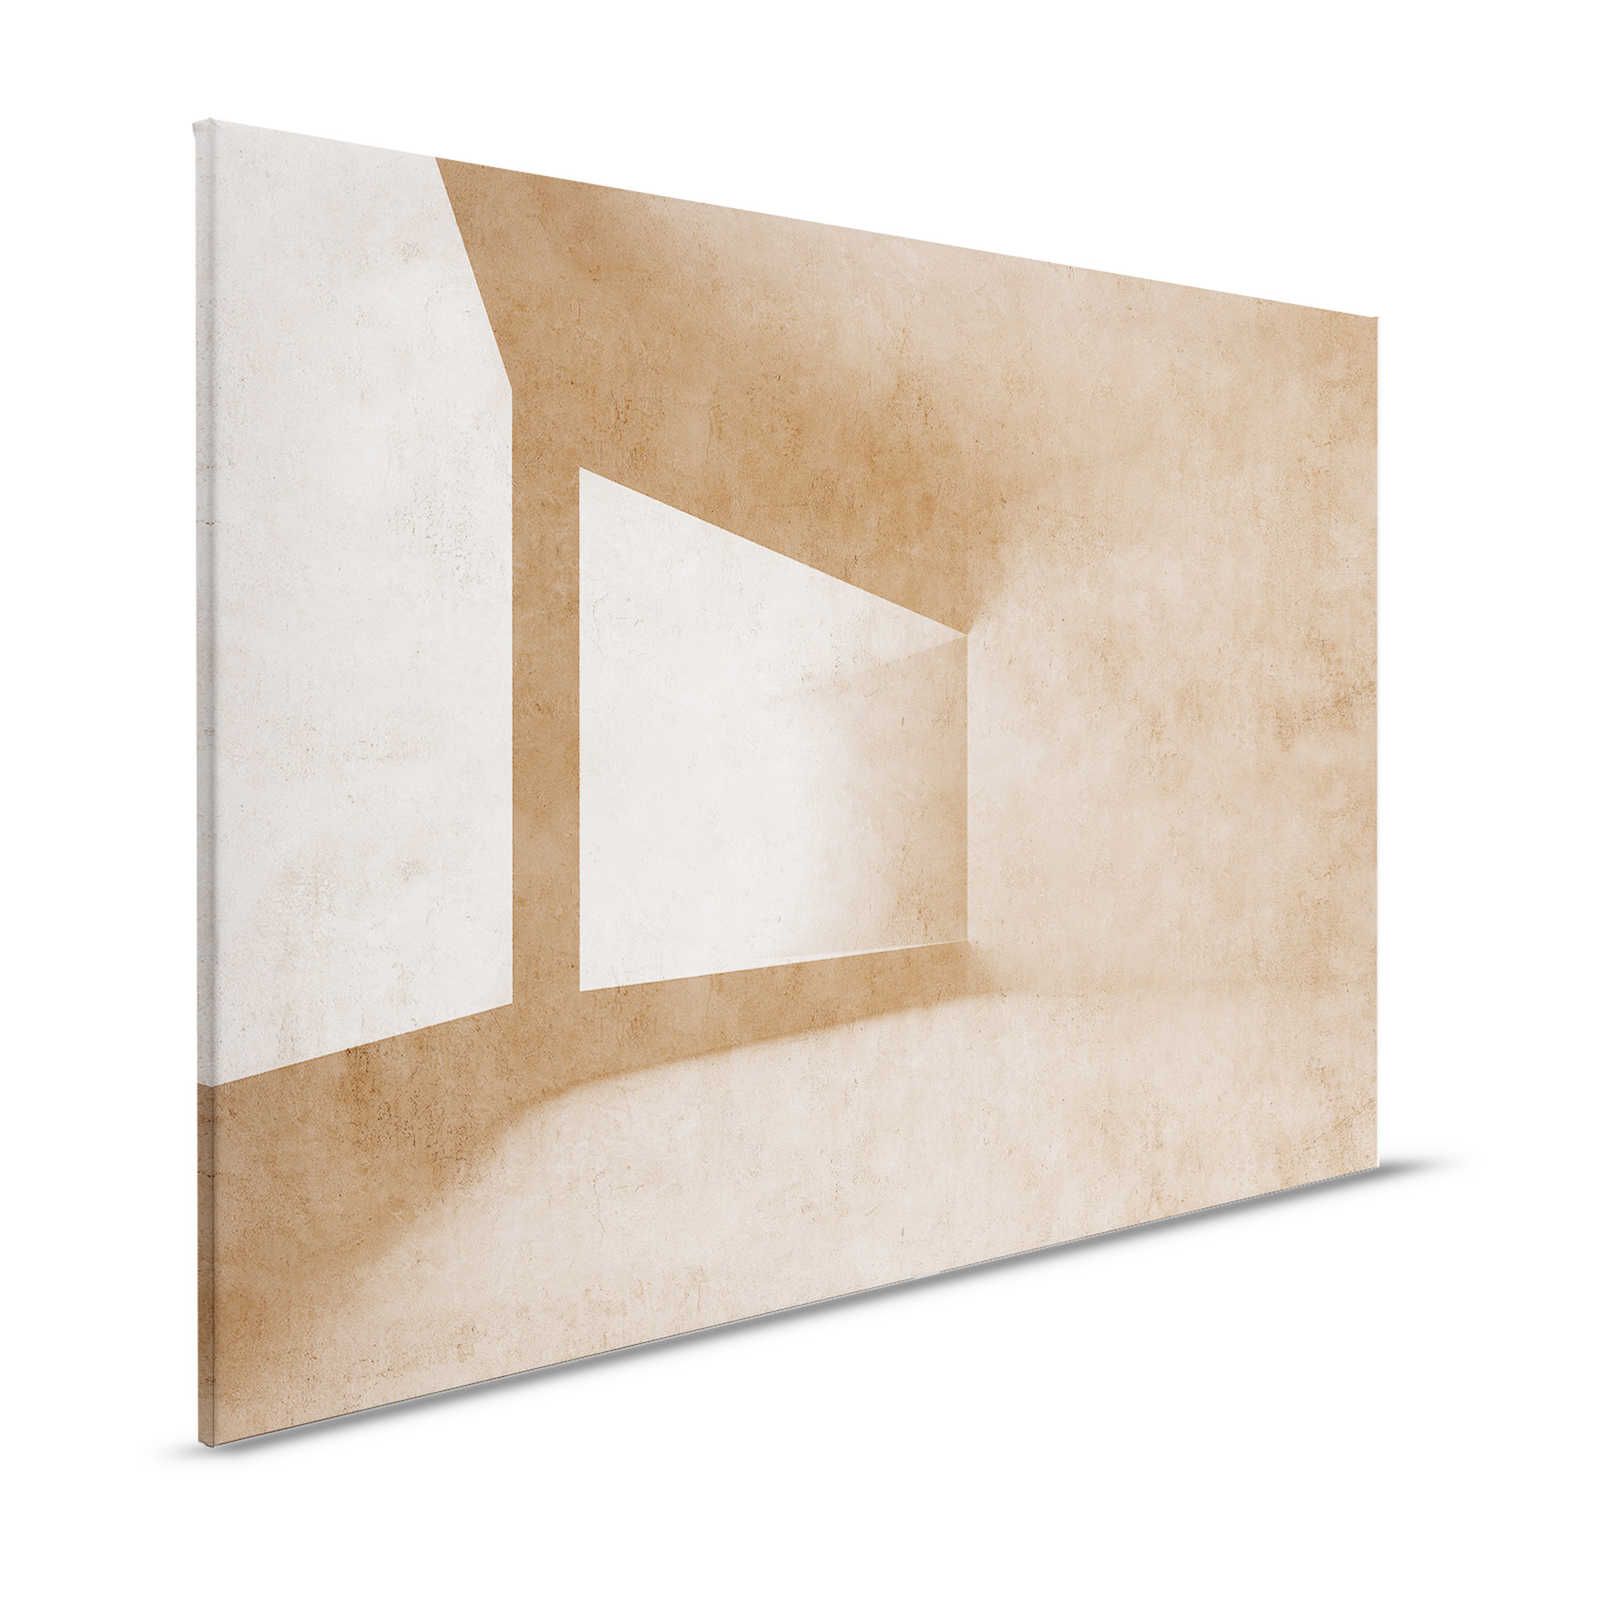 Futura 2 - 3D Canvas schilderij betonlook met grafisch ontwerp - 1,20 m x 0,80 m
